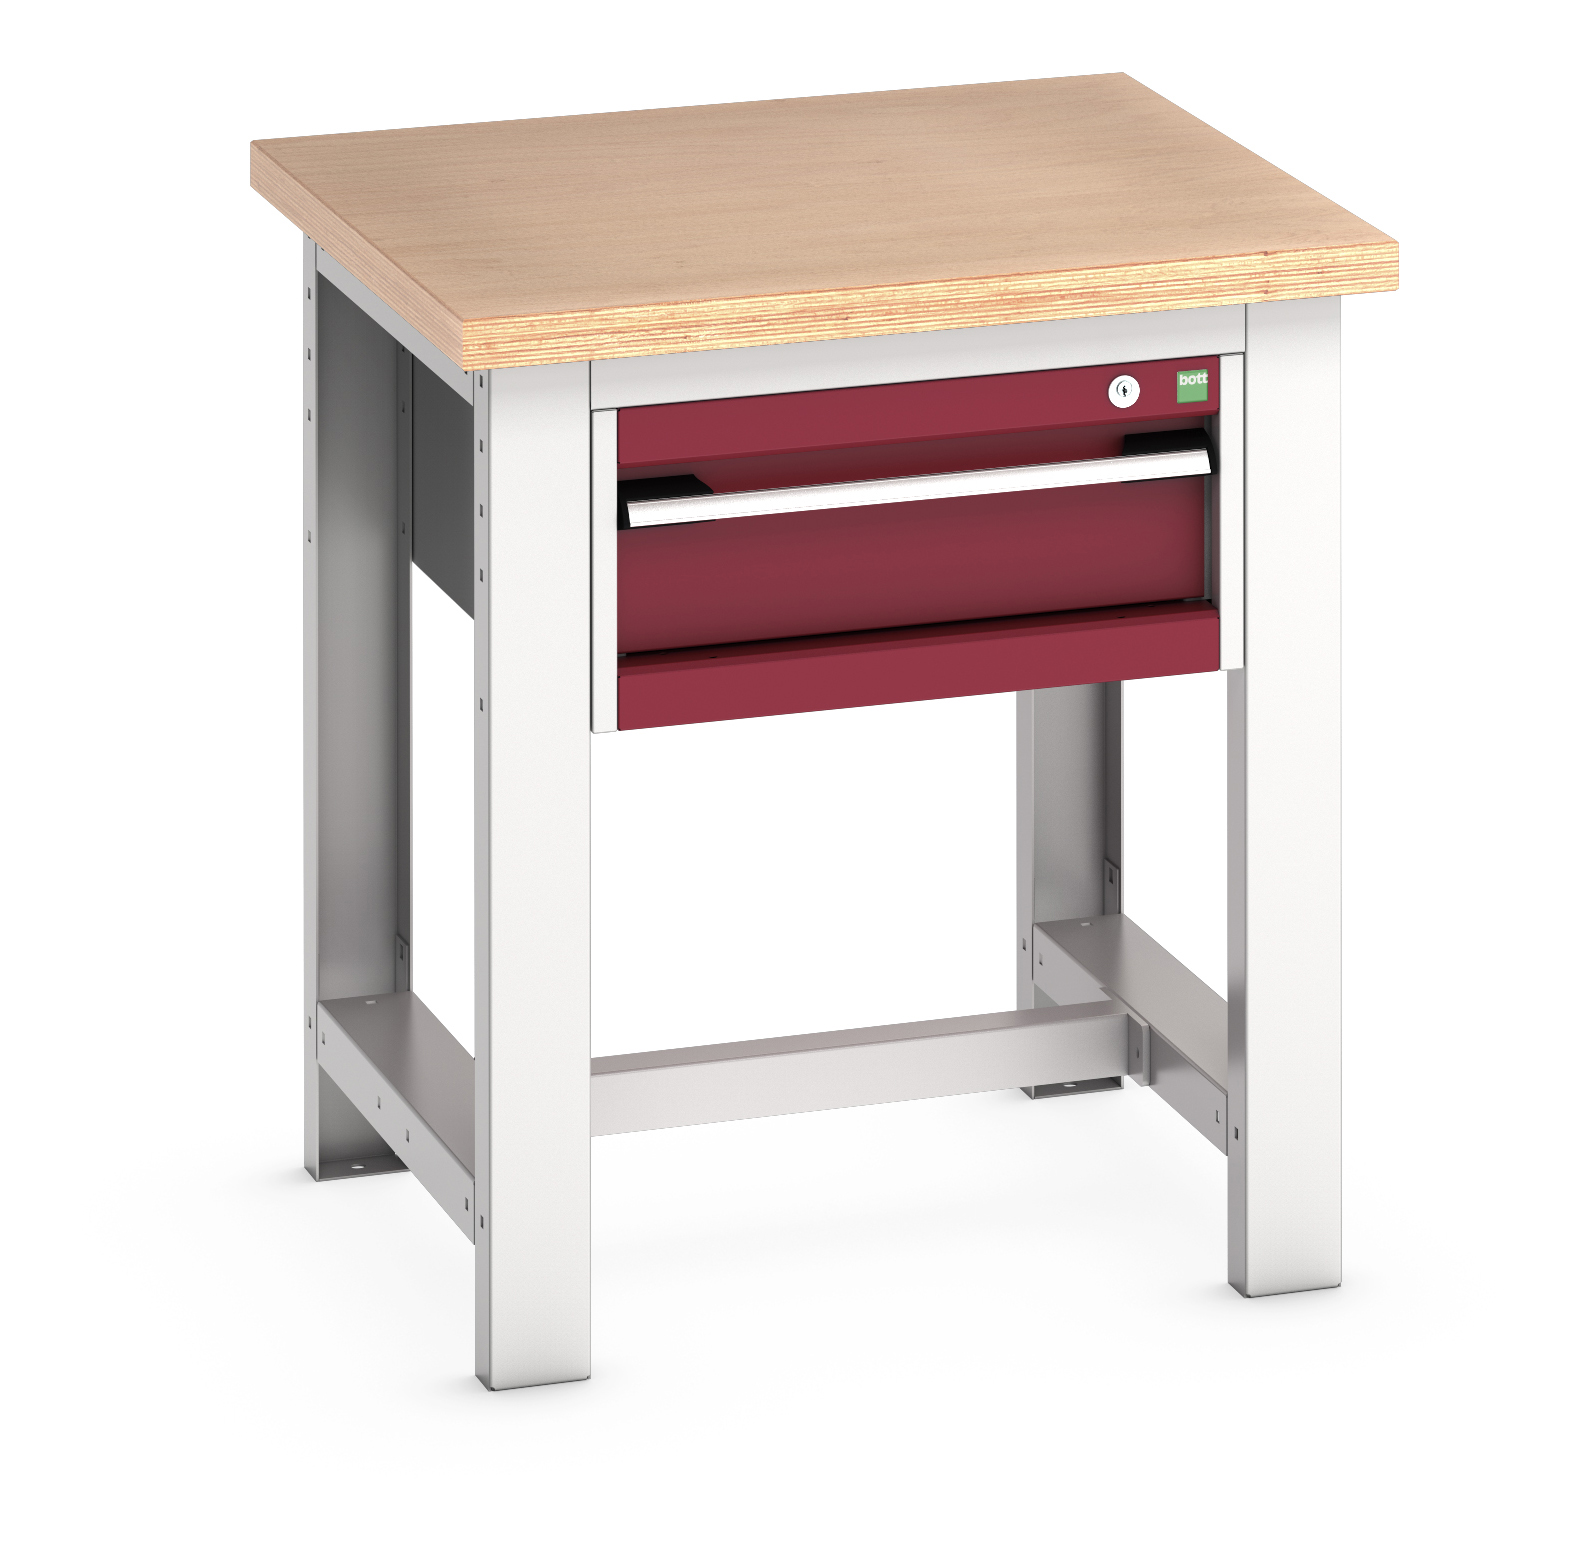 Bott Cubio Framework Workstand With 1 Drawer Cabinet - 41003521.24V